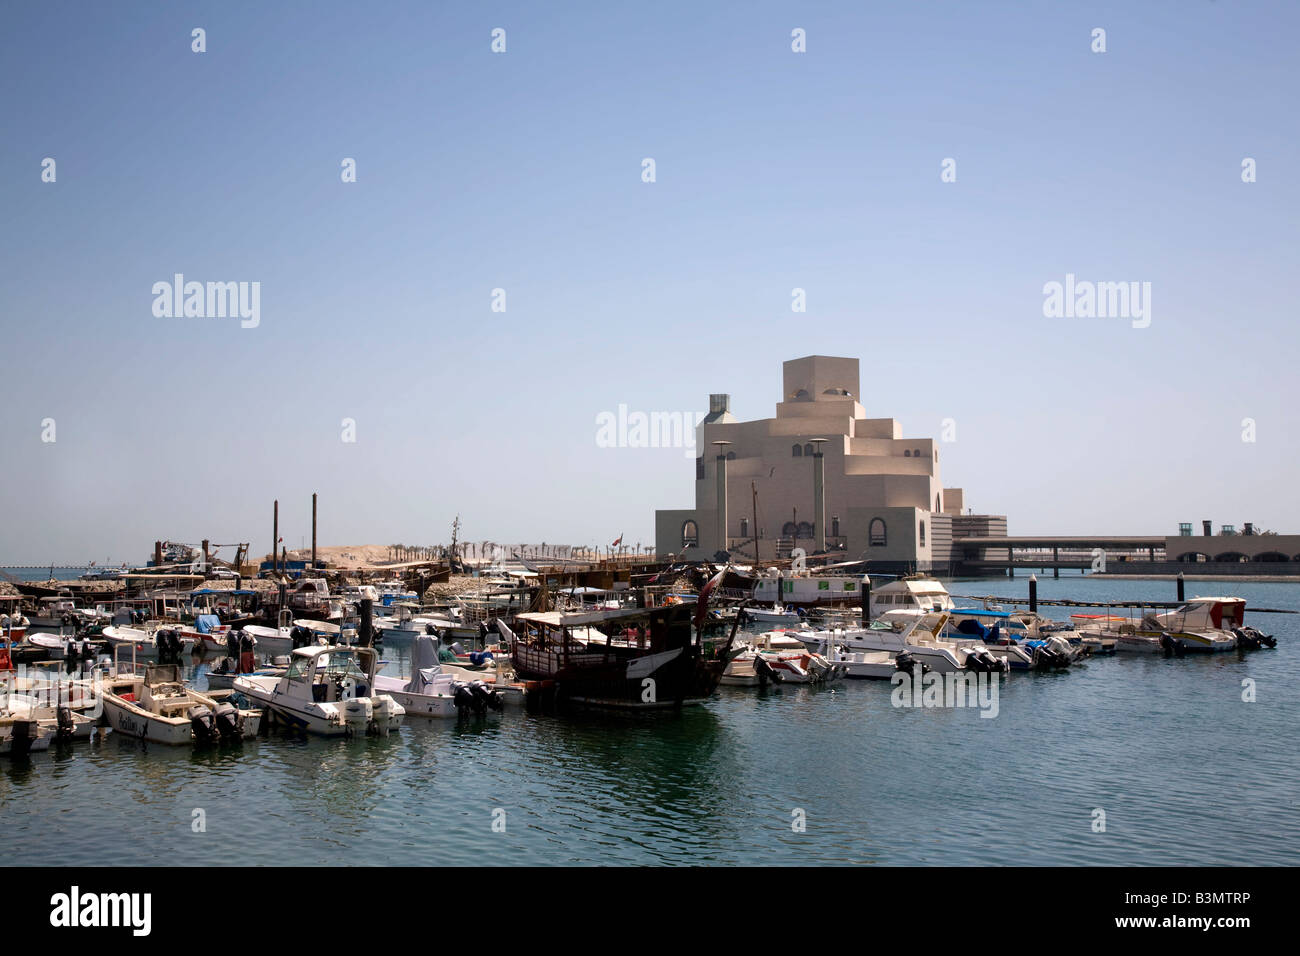 Neues Museum für islamische Kunst in Doha Skyline von Doha Bay Katar Nahost arabischen Golf mit Freude und Angelboote/Fischerboote im Vordergrund Stockfoto